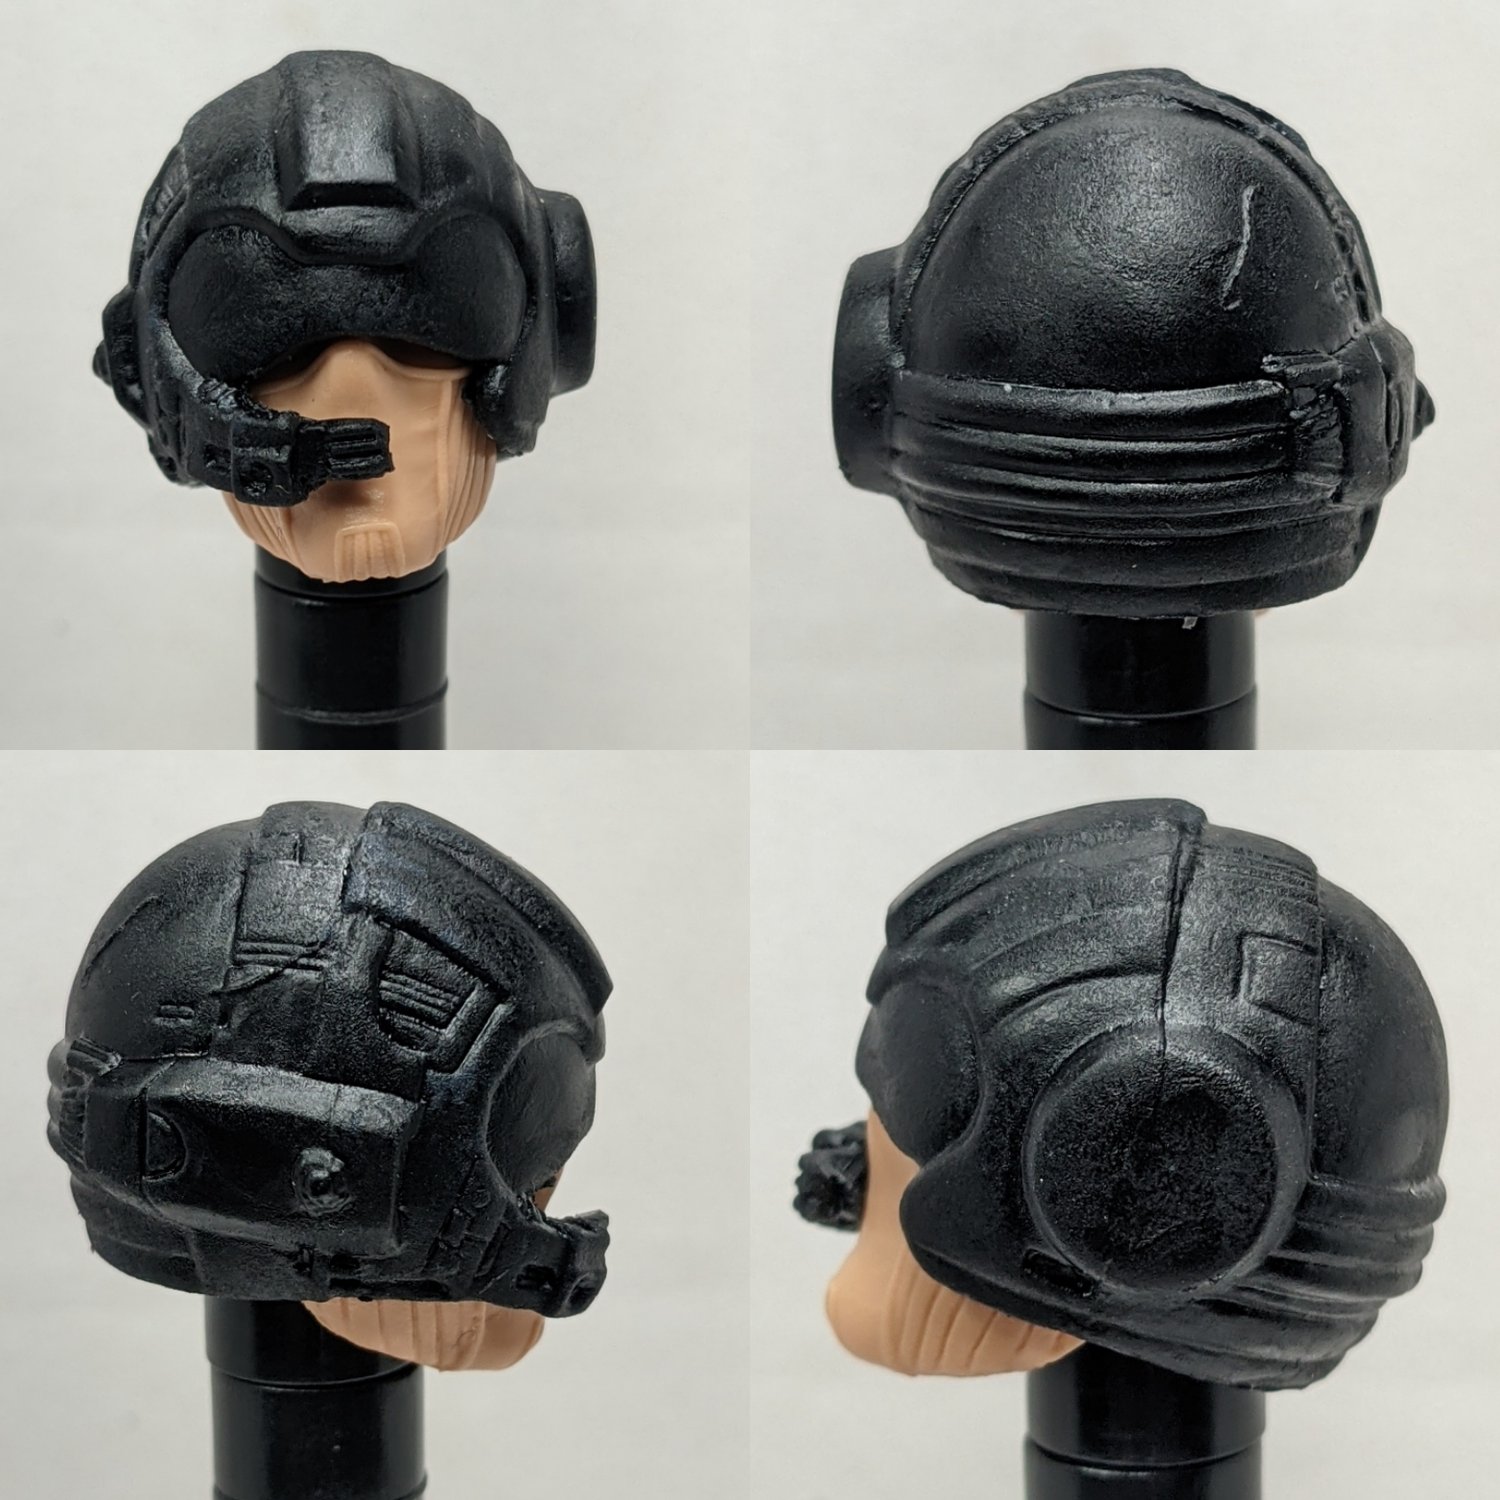 Space man helmet